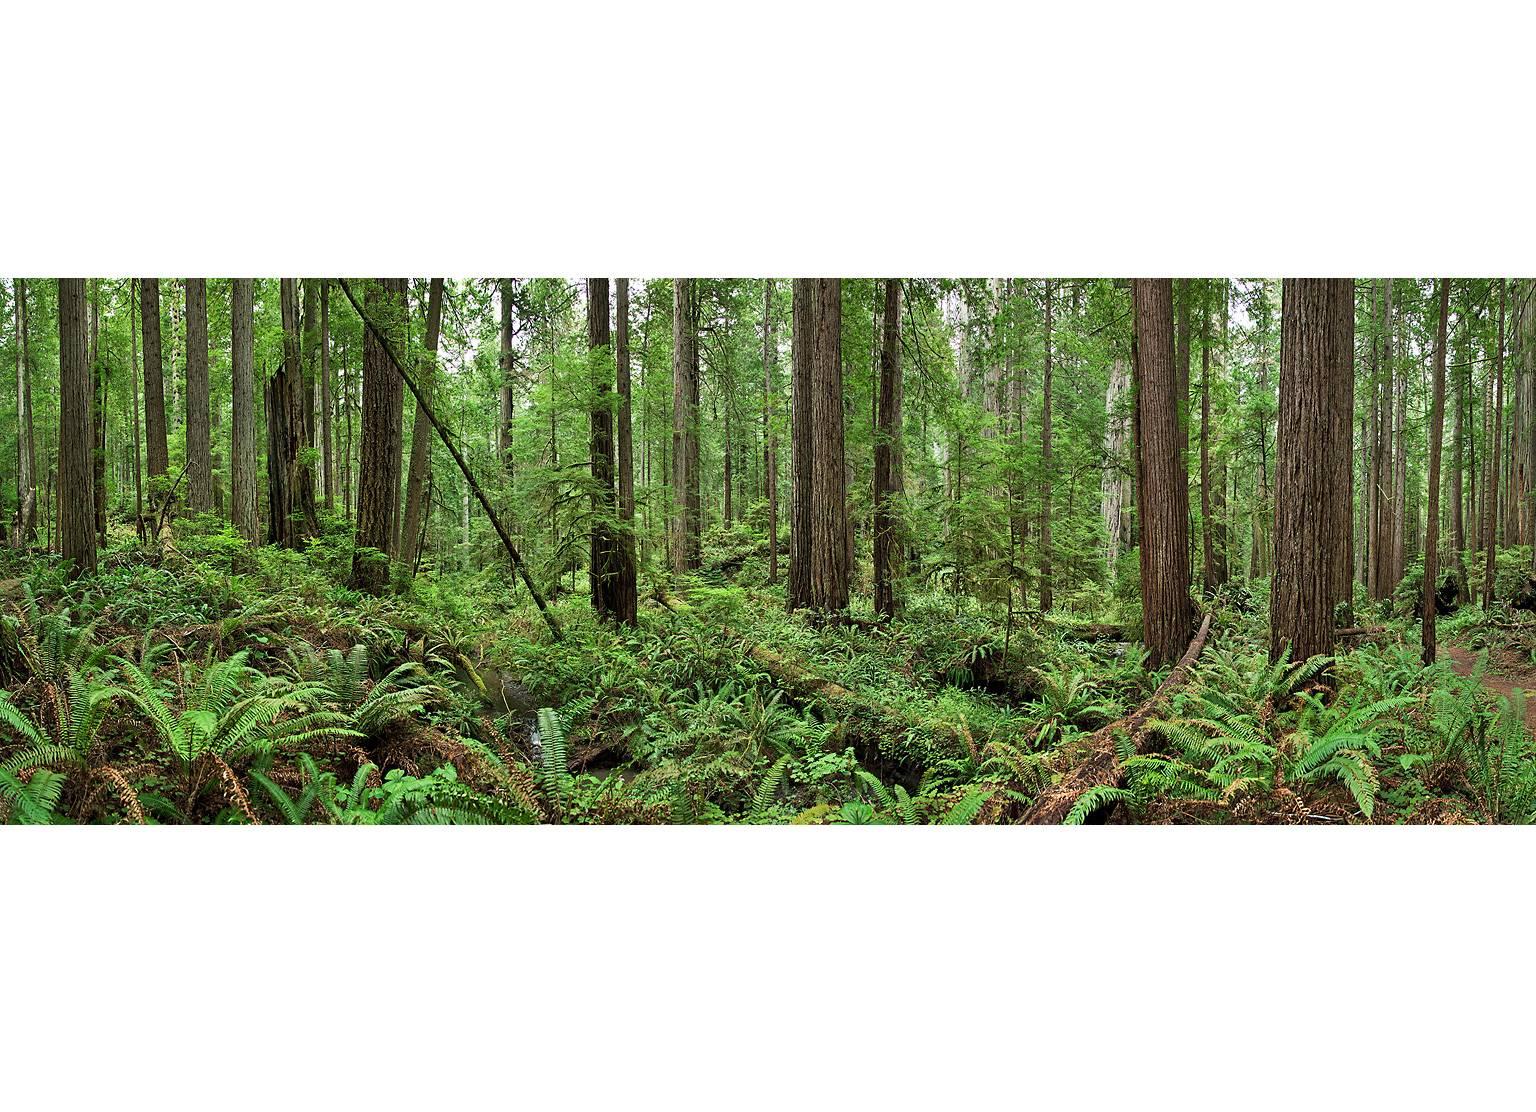 Landscape Photograph Erik Pawassar - Redwoods - panorama grand format d'observation de la nature de la forêt de bois rouges verts